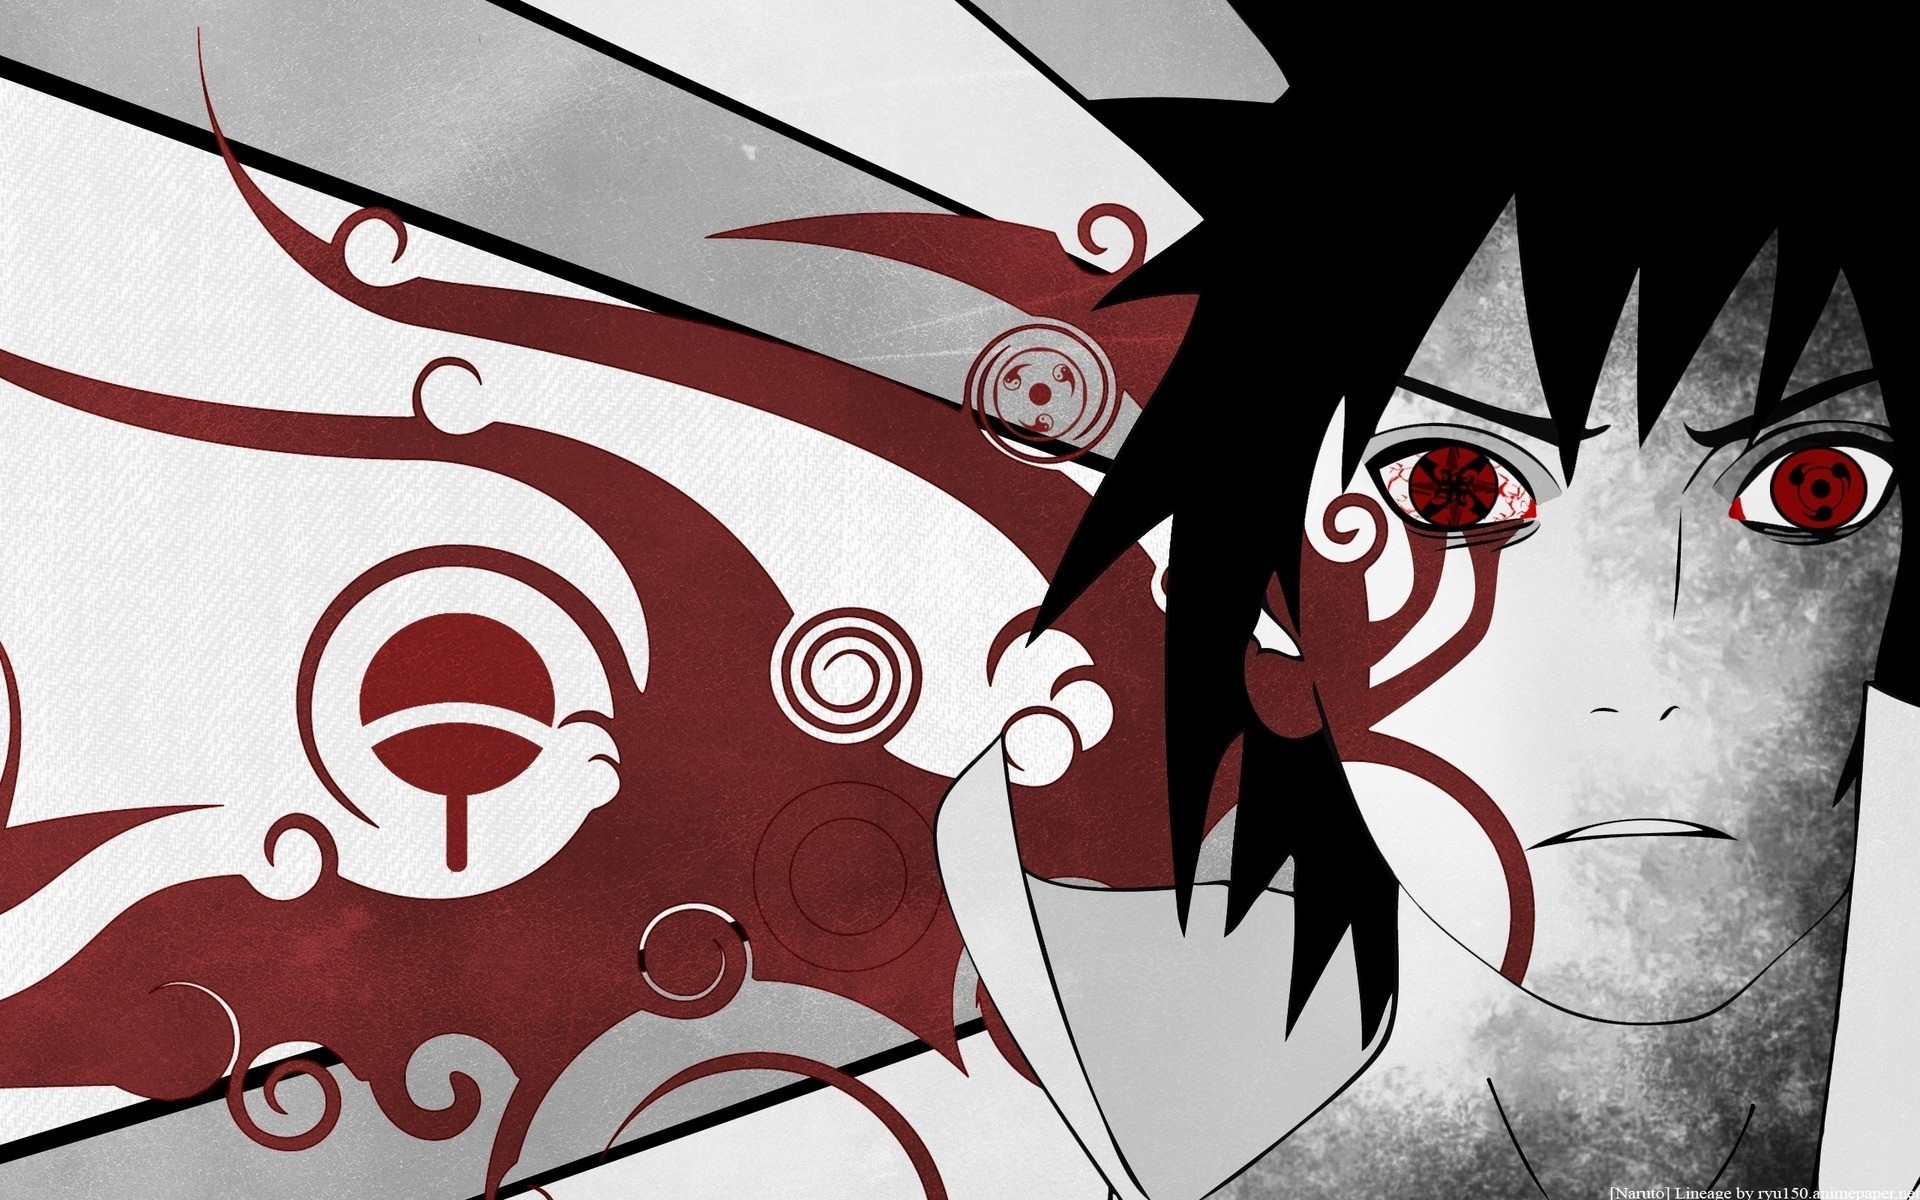 Sasuke Eye Wallpapers